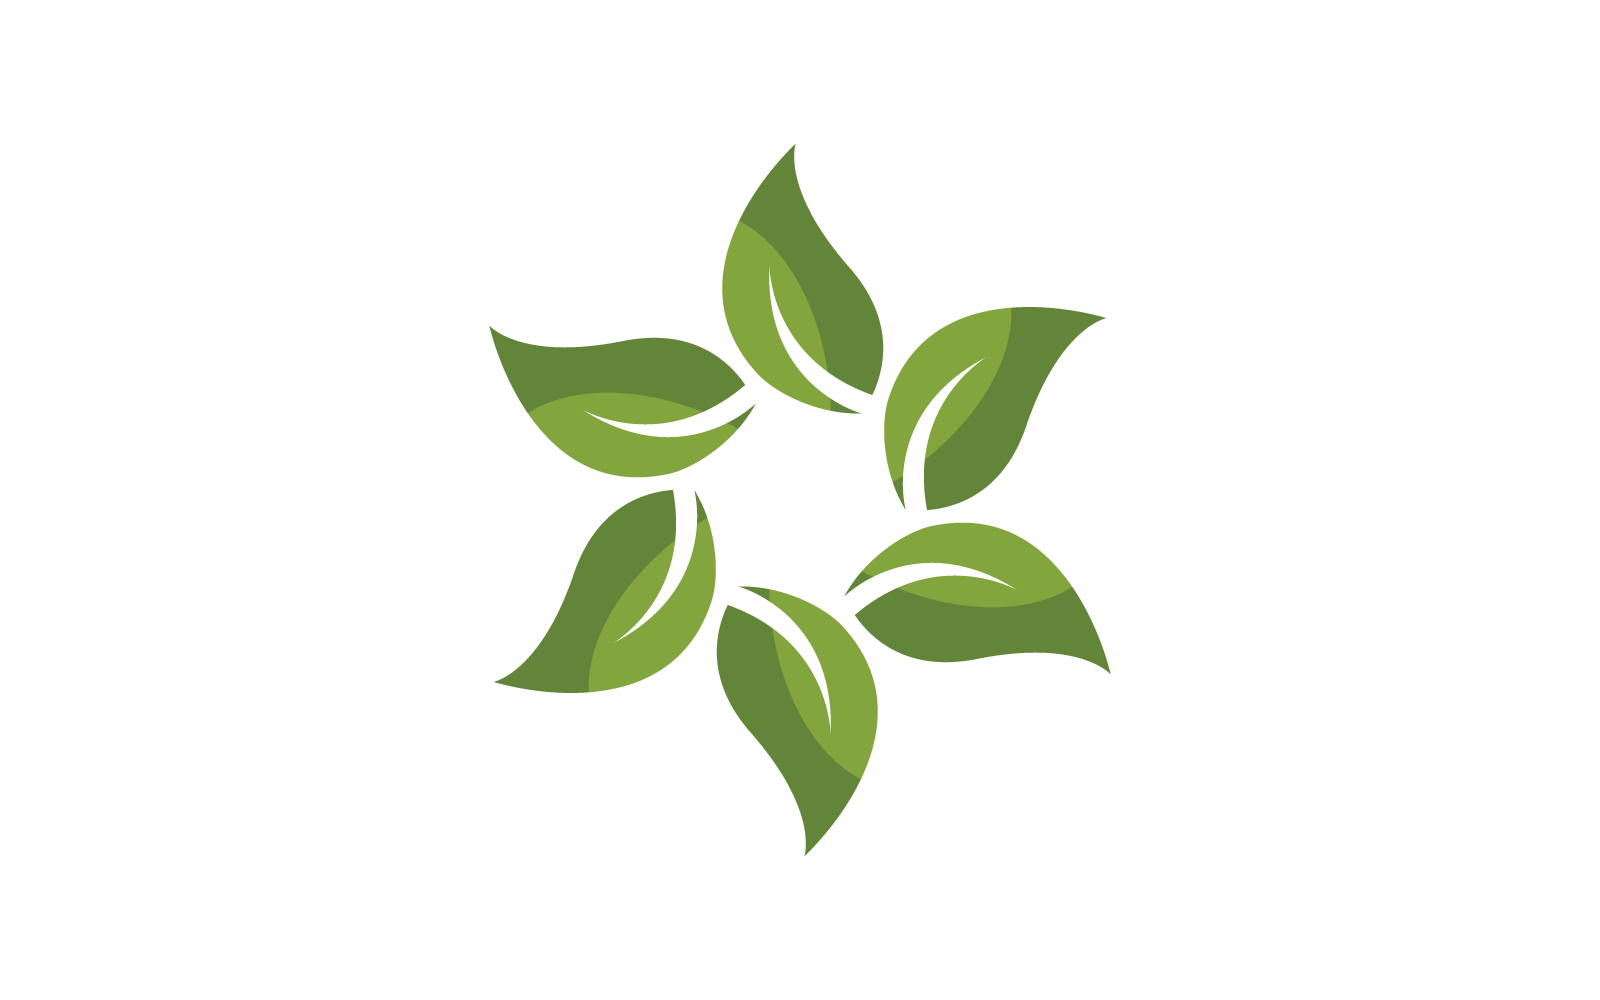 Green leaf logo and symbol nature logo design